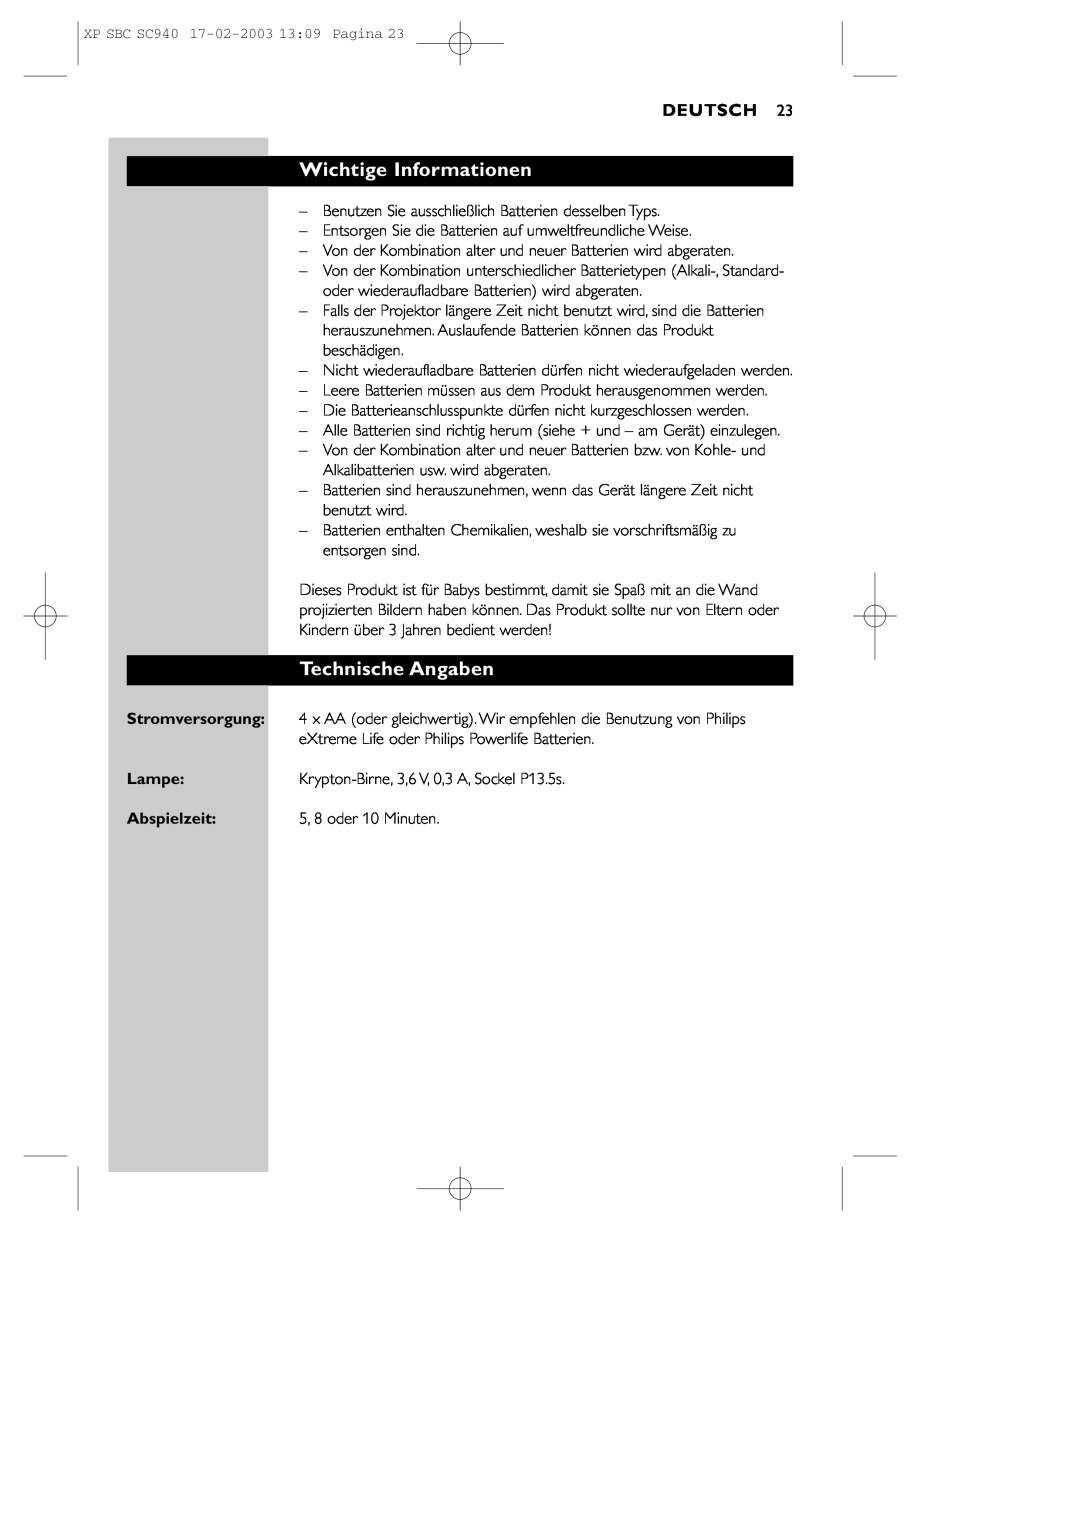 Philips SBC SC940 manual Wichtige Informationen, Technische Angaben, Deutsch, Stromversorgung, Lampe, Abspielzeit 